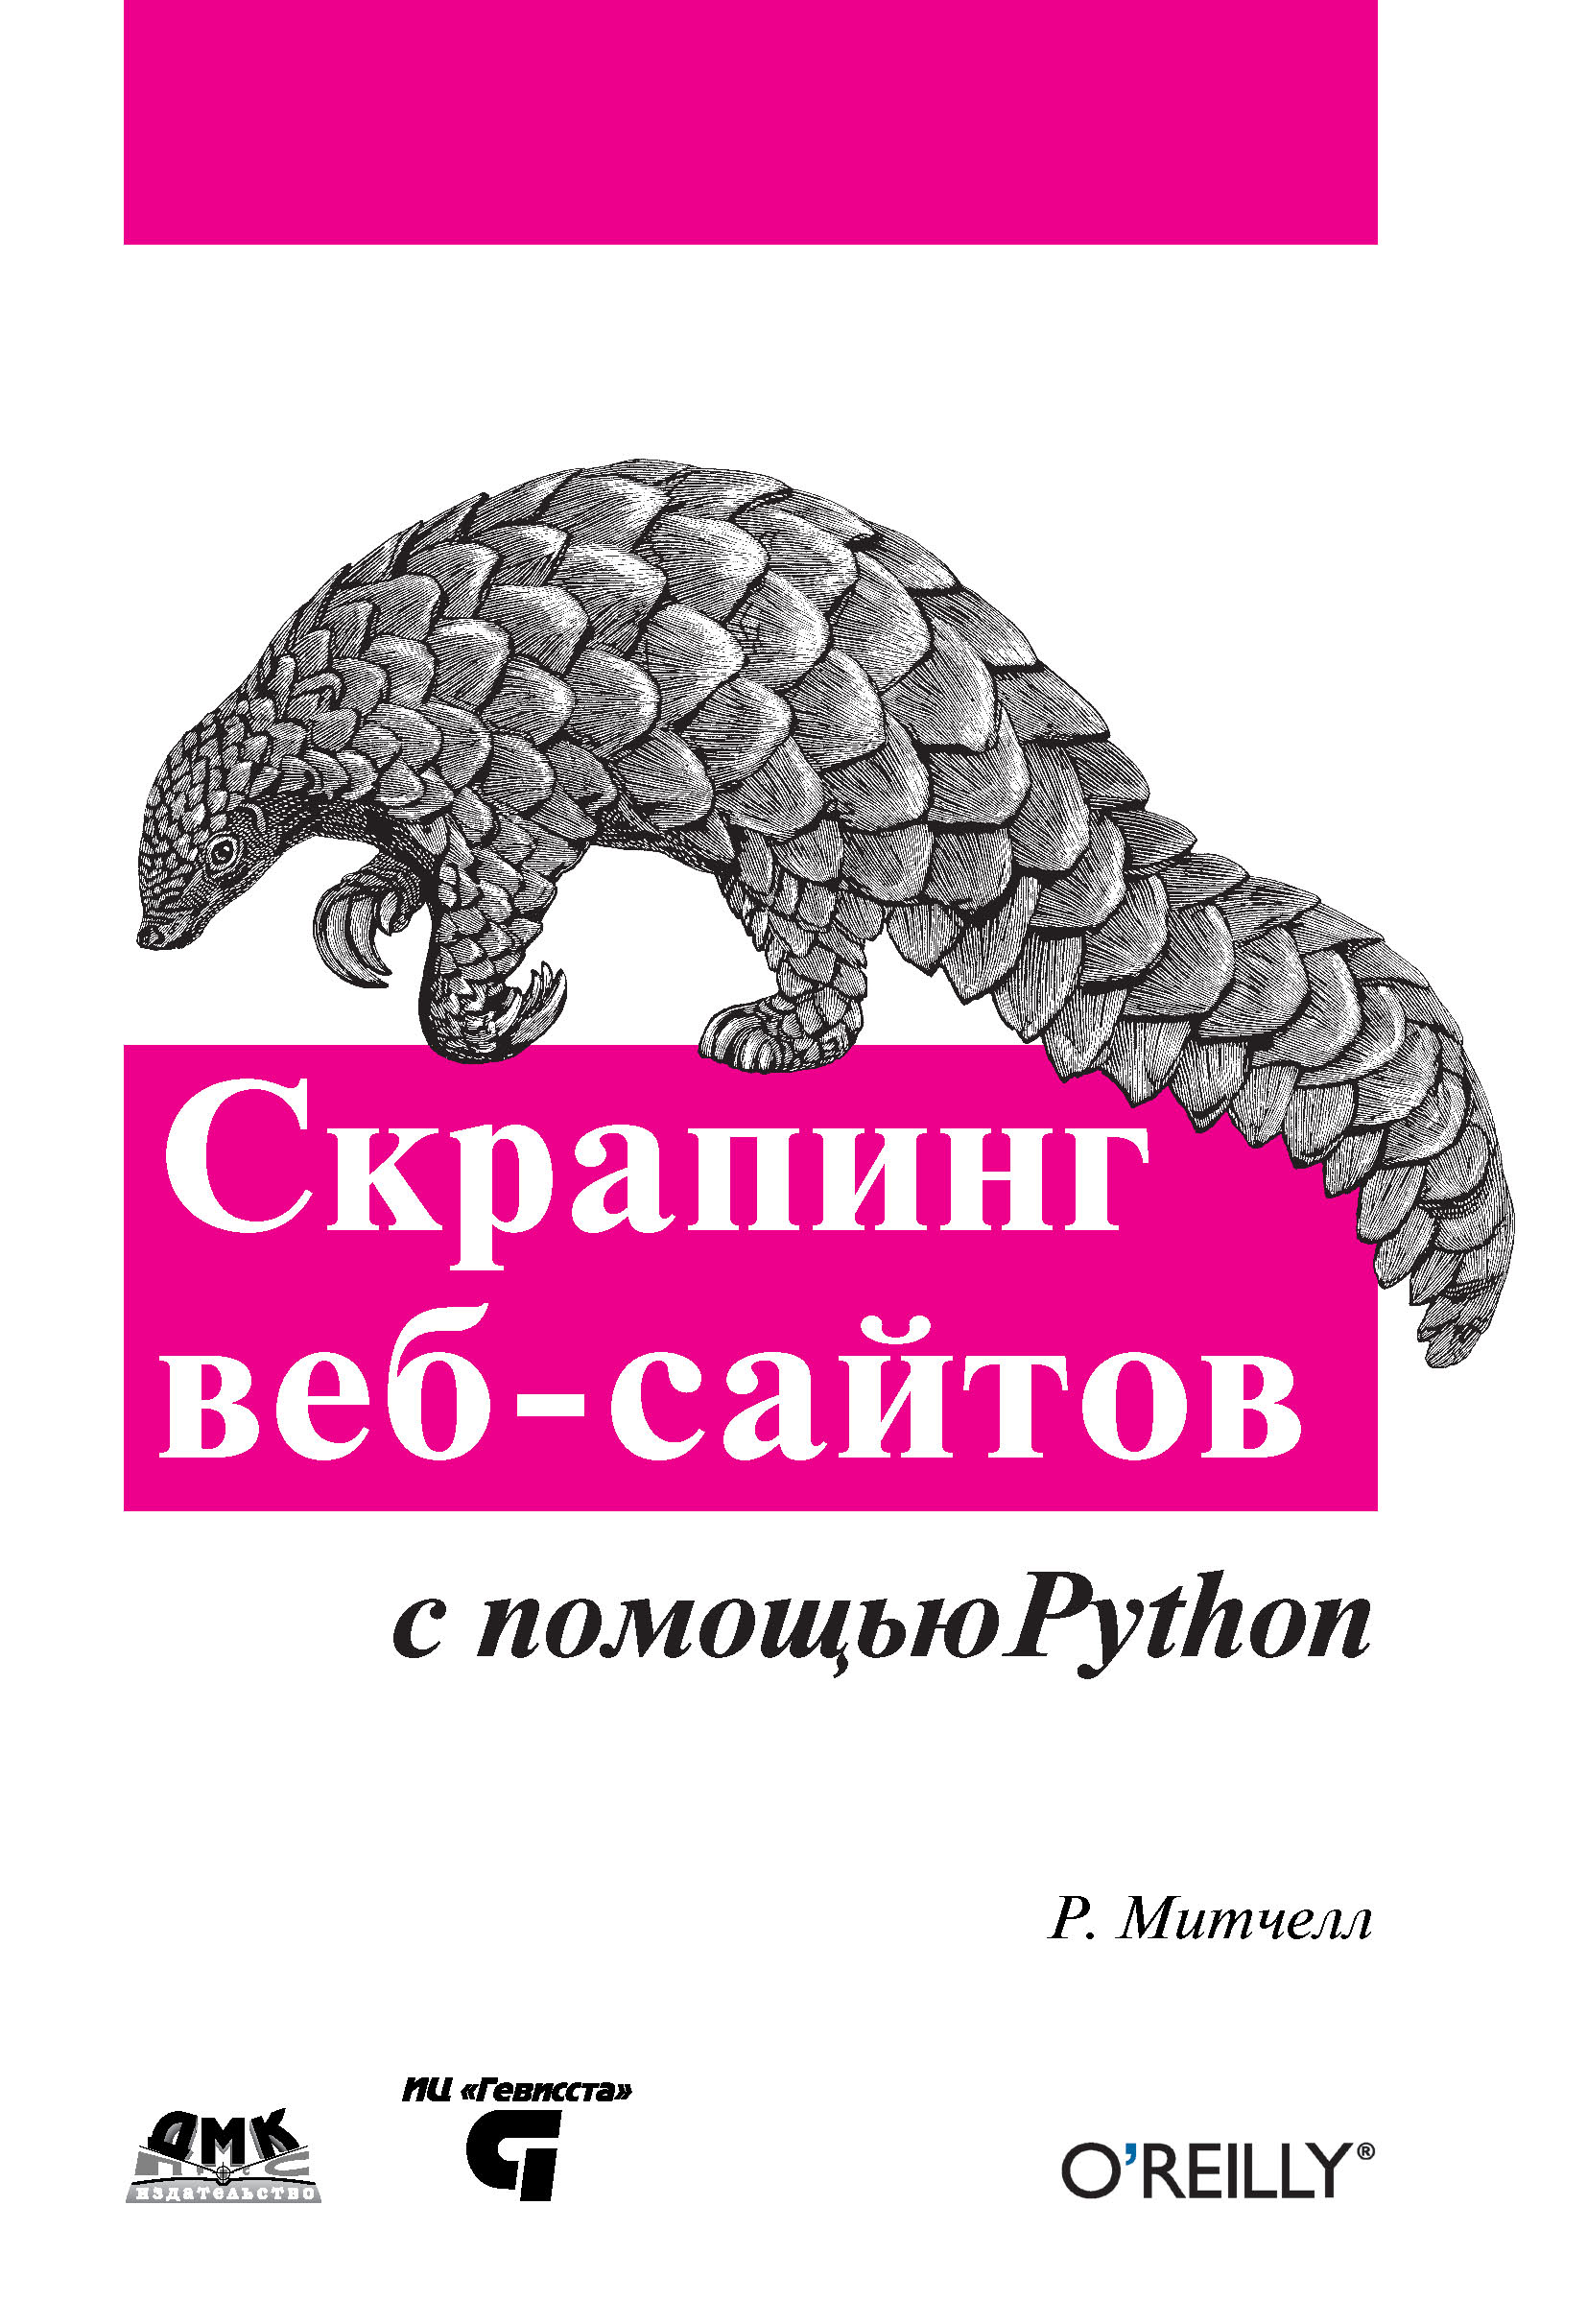 Книга  Скрапинг веб-сайтов с помощью Python созданная Райан Митчелл, Артем Груздев может относится к жанру зарубежная компьютерная литература, интернет, программирование. Стоимость электронной книги Скрапинг веб-сайтов с помощью Python с идентификатором 22968866 составляет 519.00 руб.